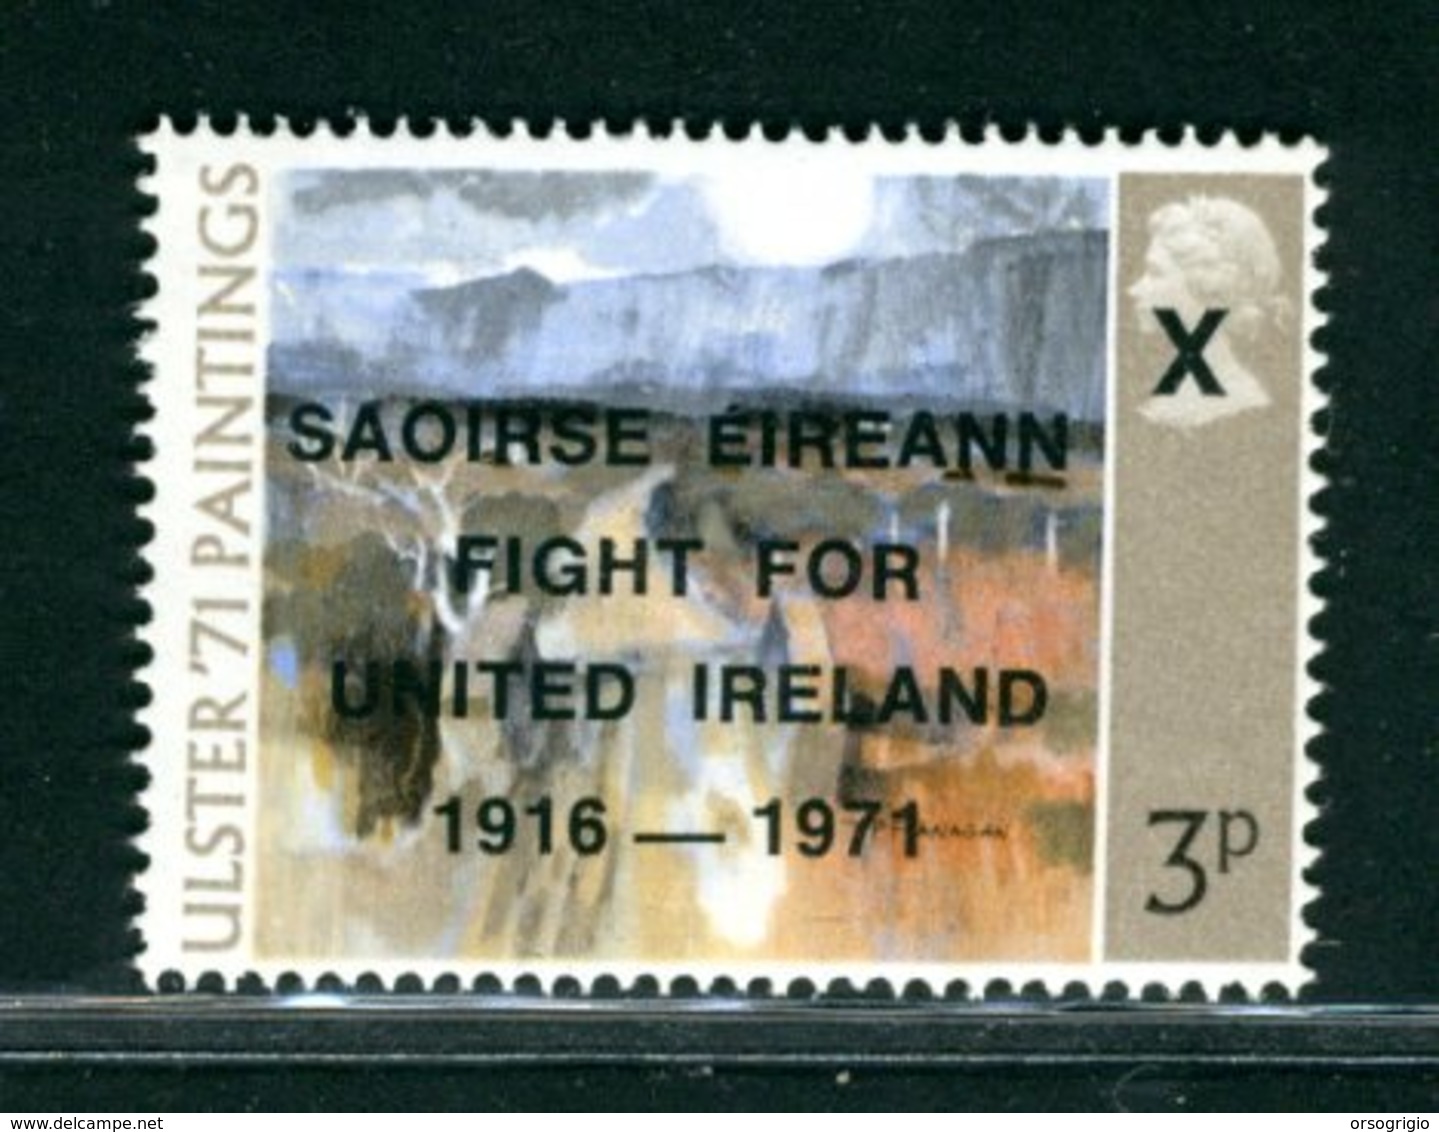 IRLANDA EIRE - MNH NUOVO PERFETT0 LUXE - SAOIRSE EIREANN FIGHT FOR UNITED IRELAND 1916-1971 -  Anglo-Irish War - Nuovi